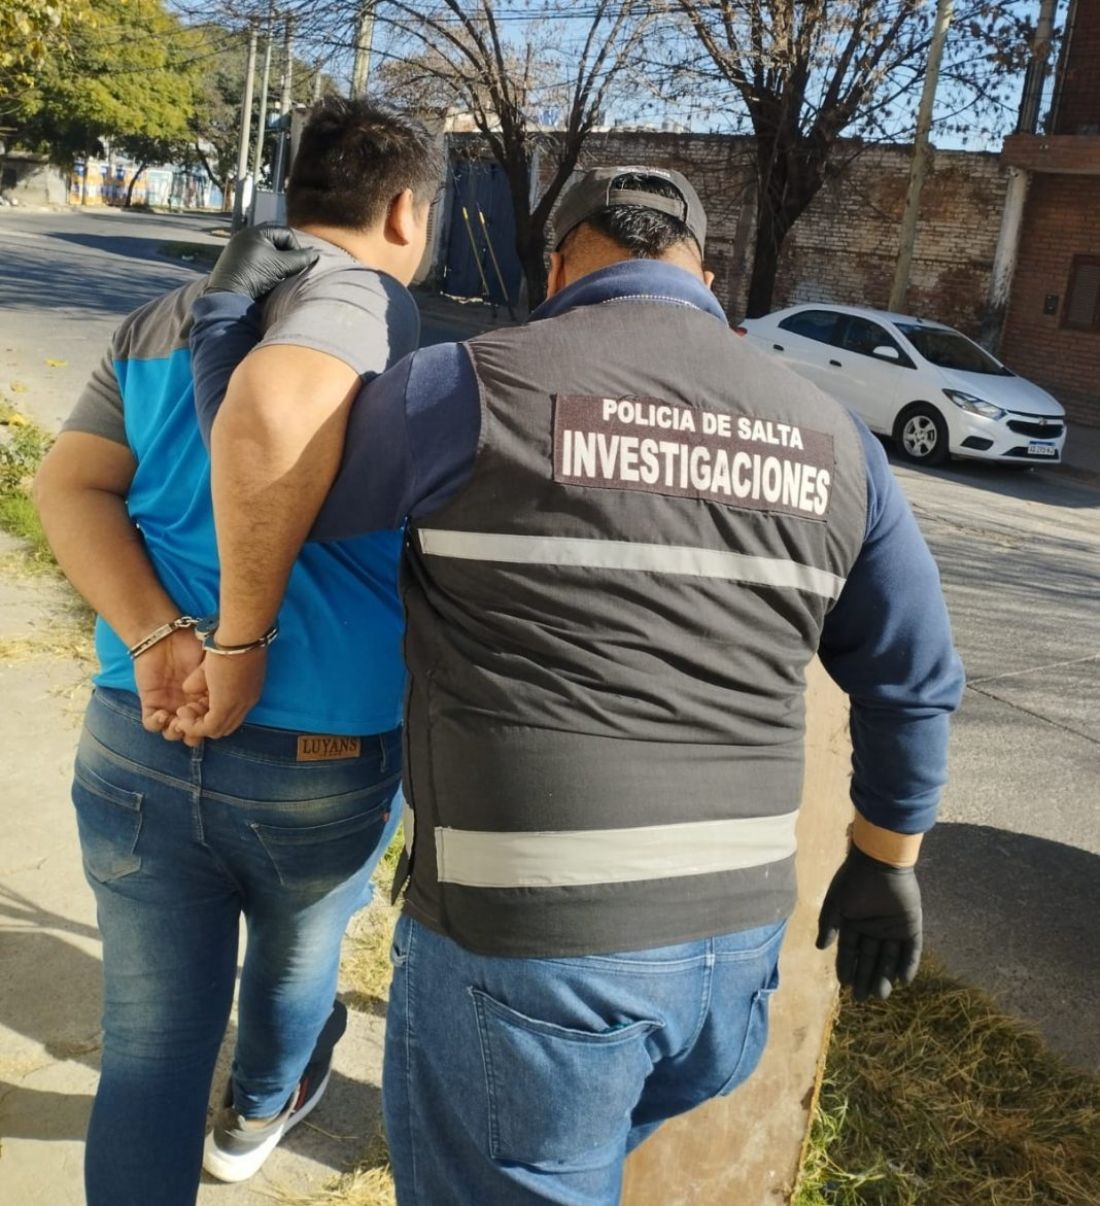 Otro detenido en Salta por producción y distribución de contenido sexual infantil - Policiales